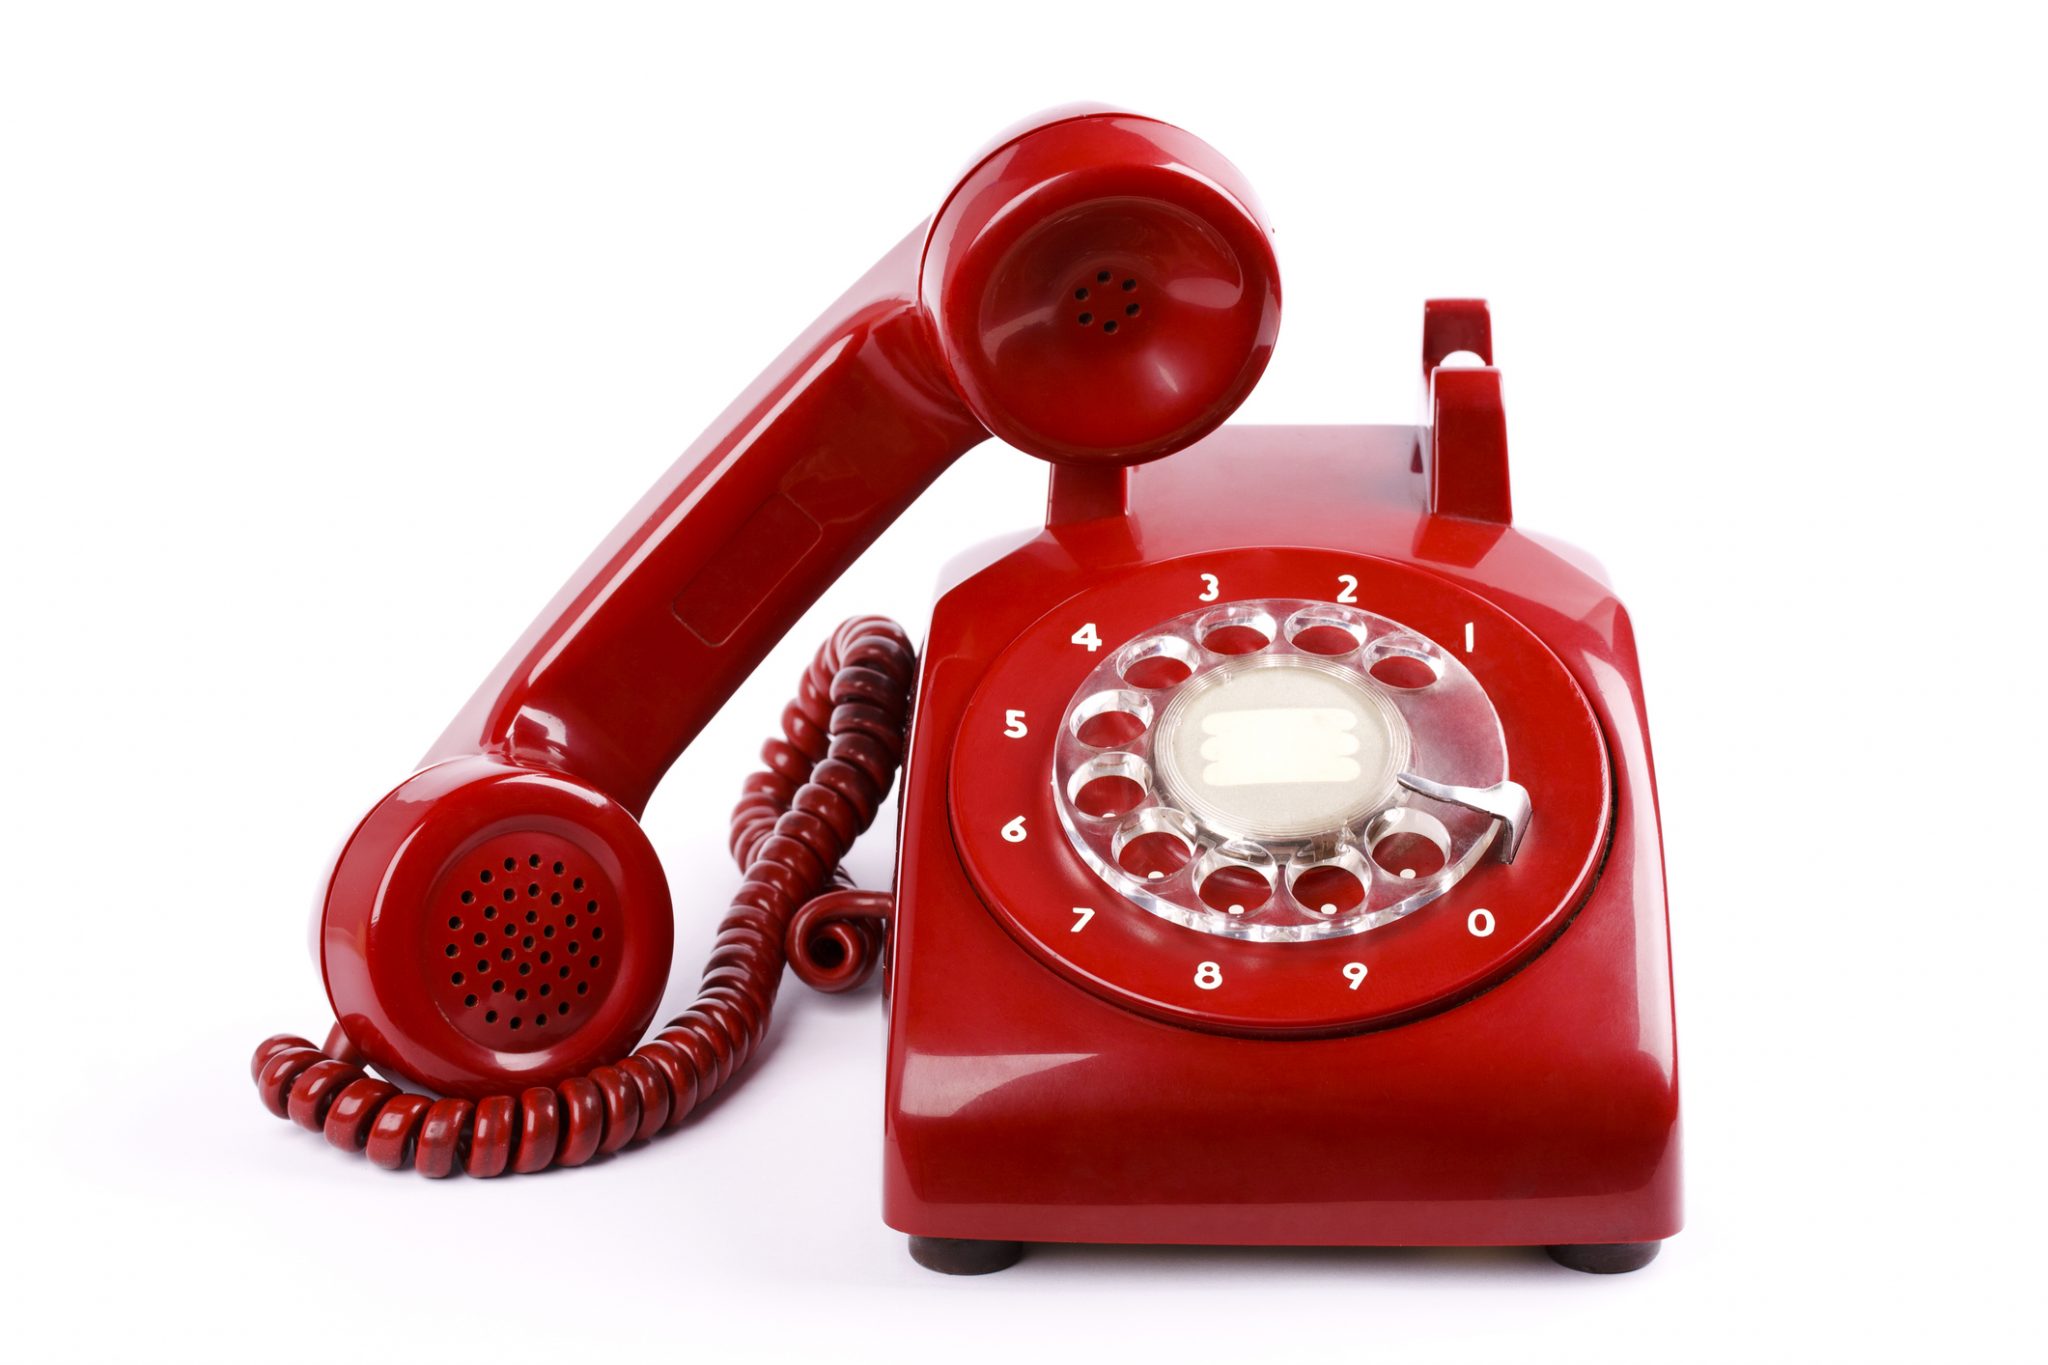 Горячие телефоны минск. Горячая линия. Красный телефон. Телефонная трубка. Красный телефонный аппарат.